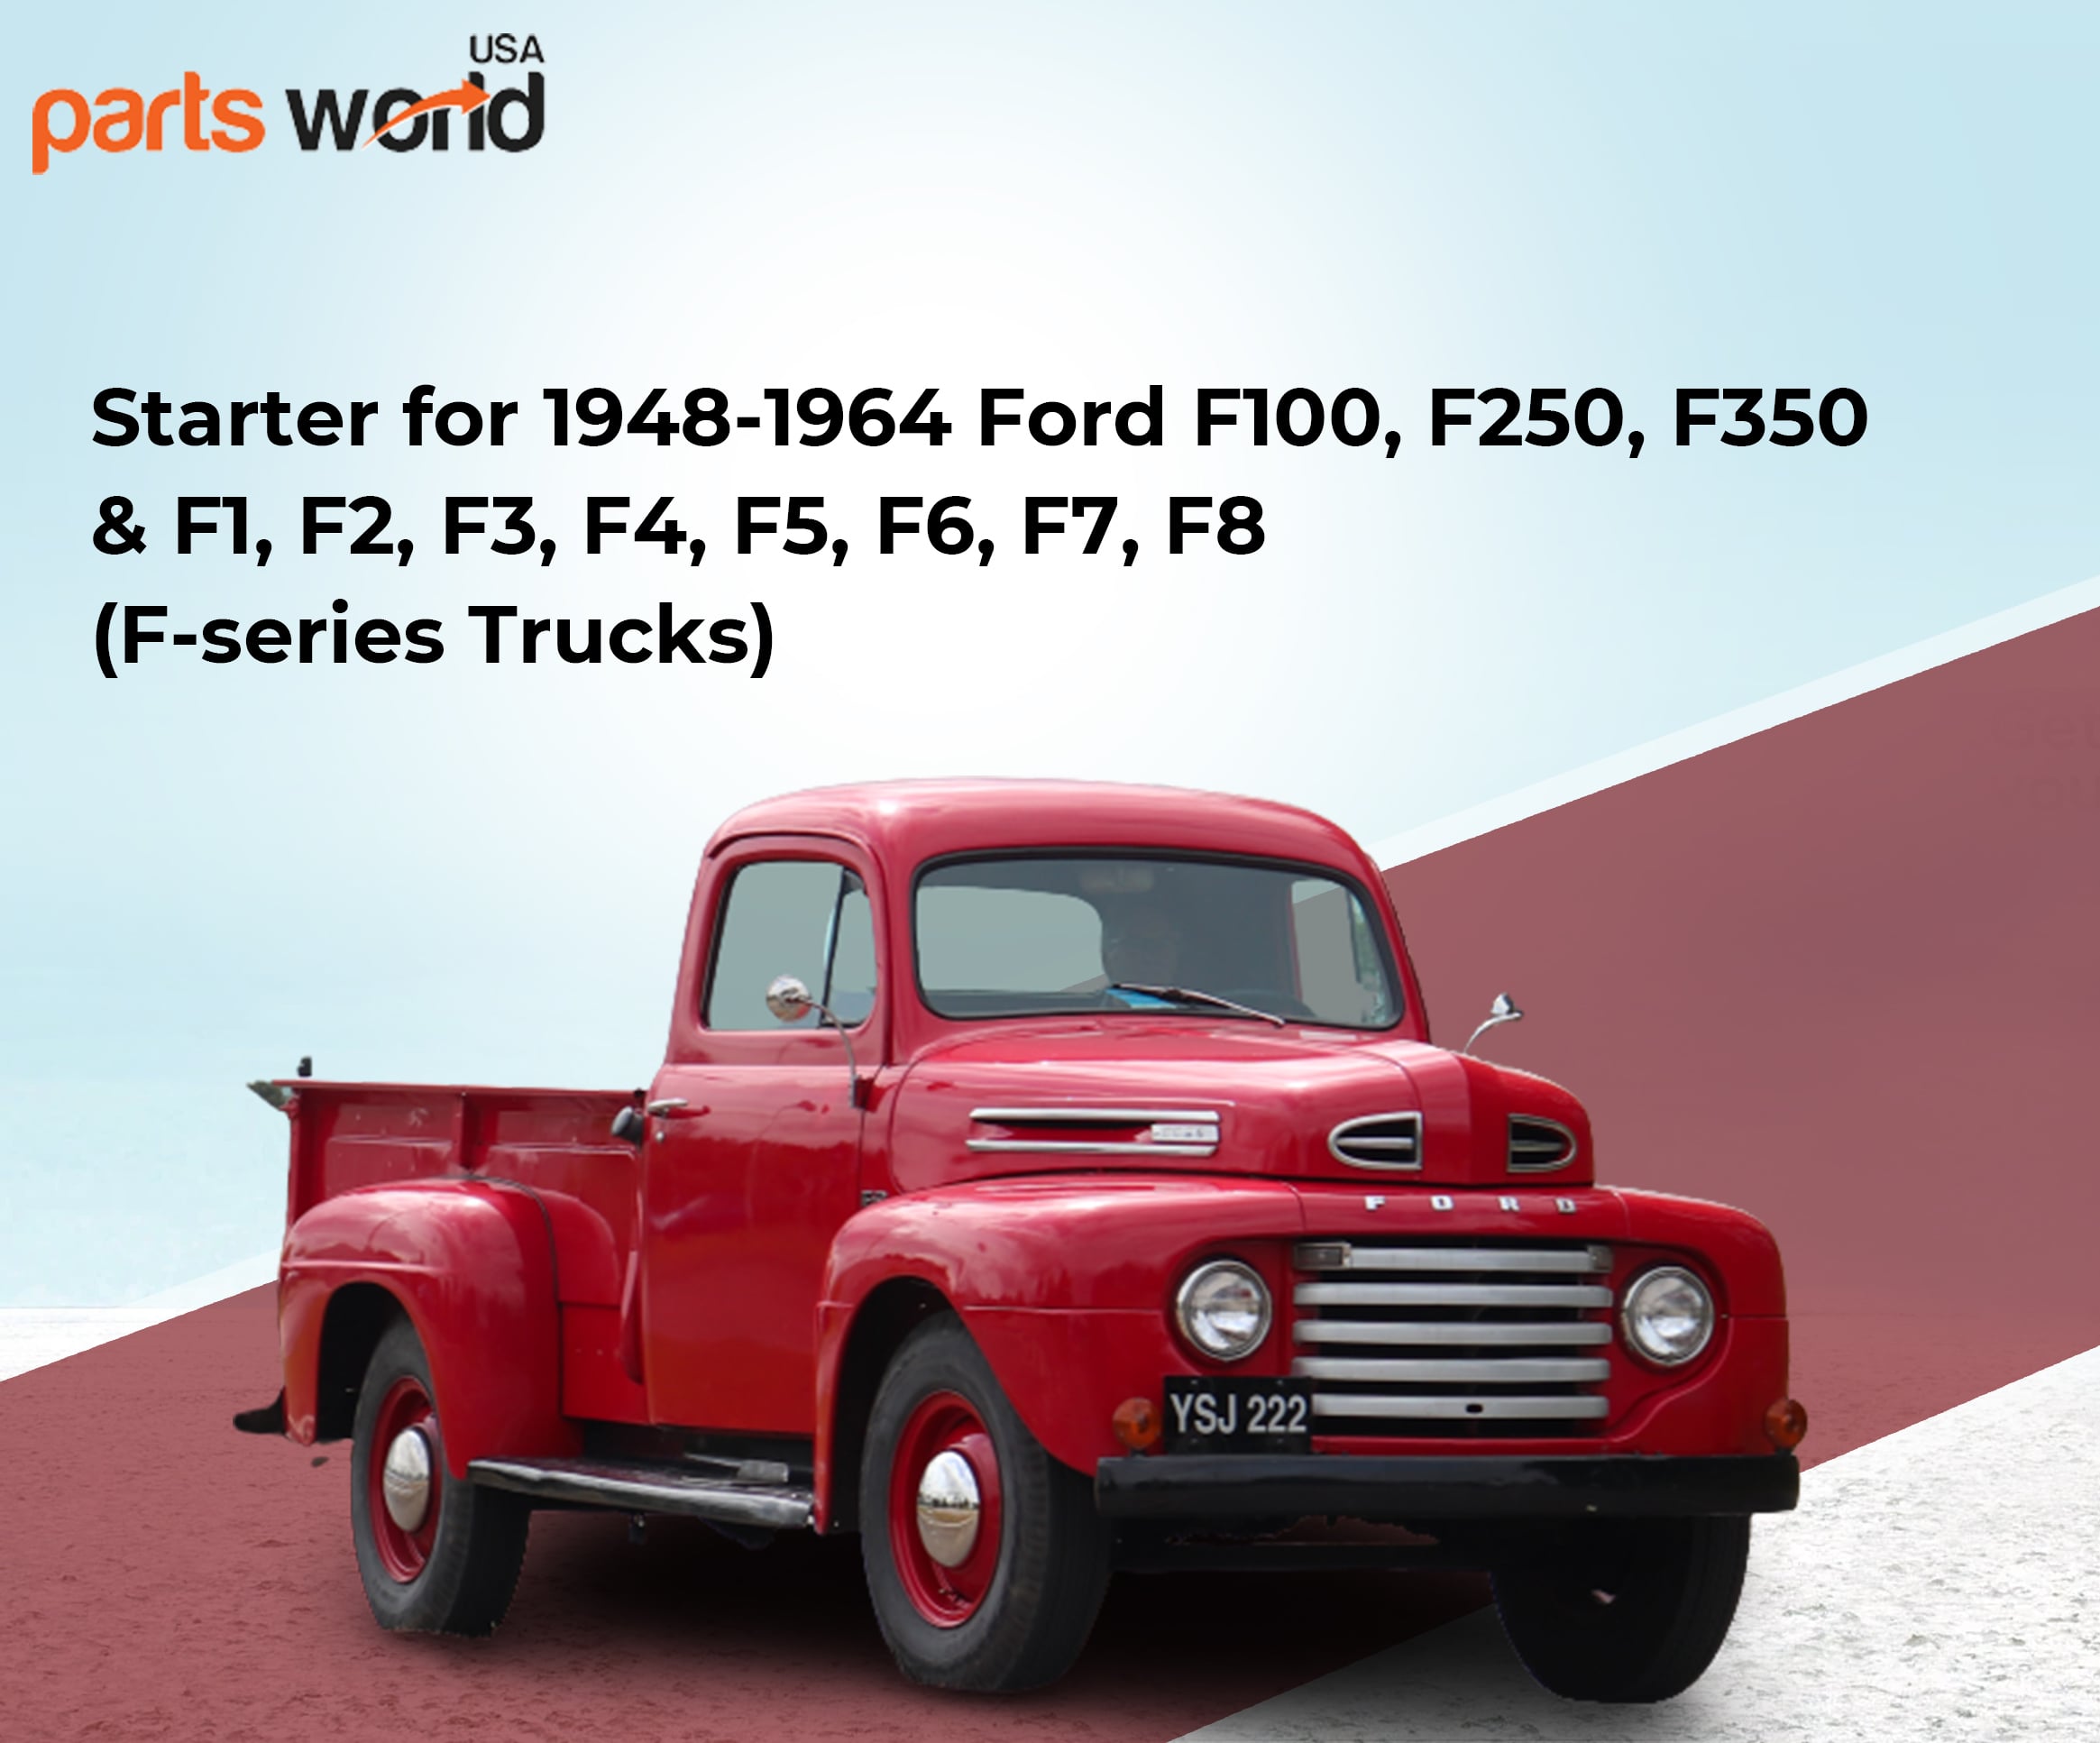 1948-1964 Ford F100 F250 F350 Starter F1 F2 F3 to F8 Truck